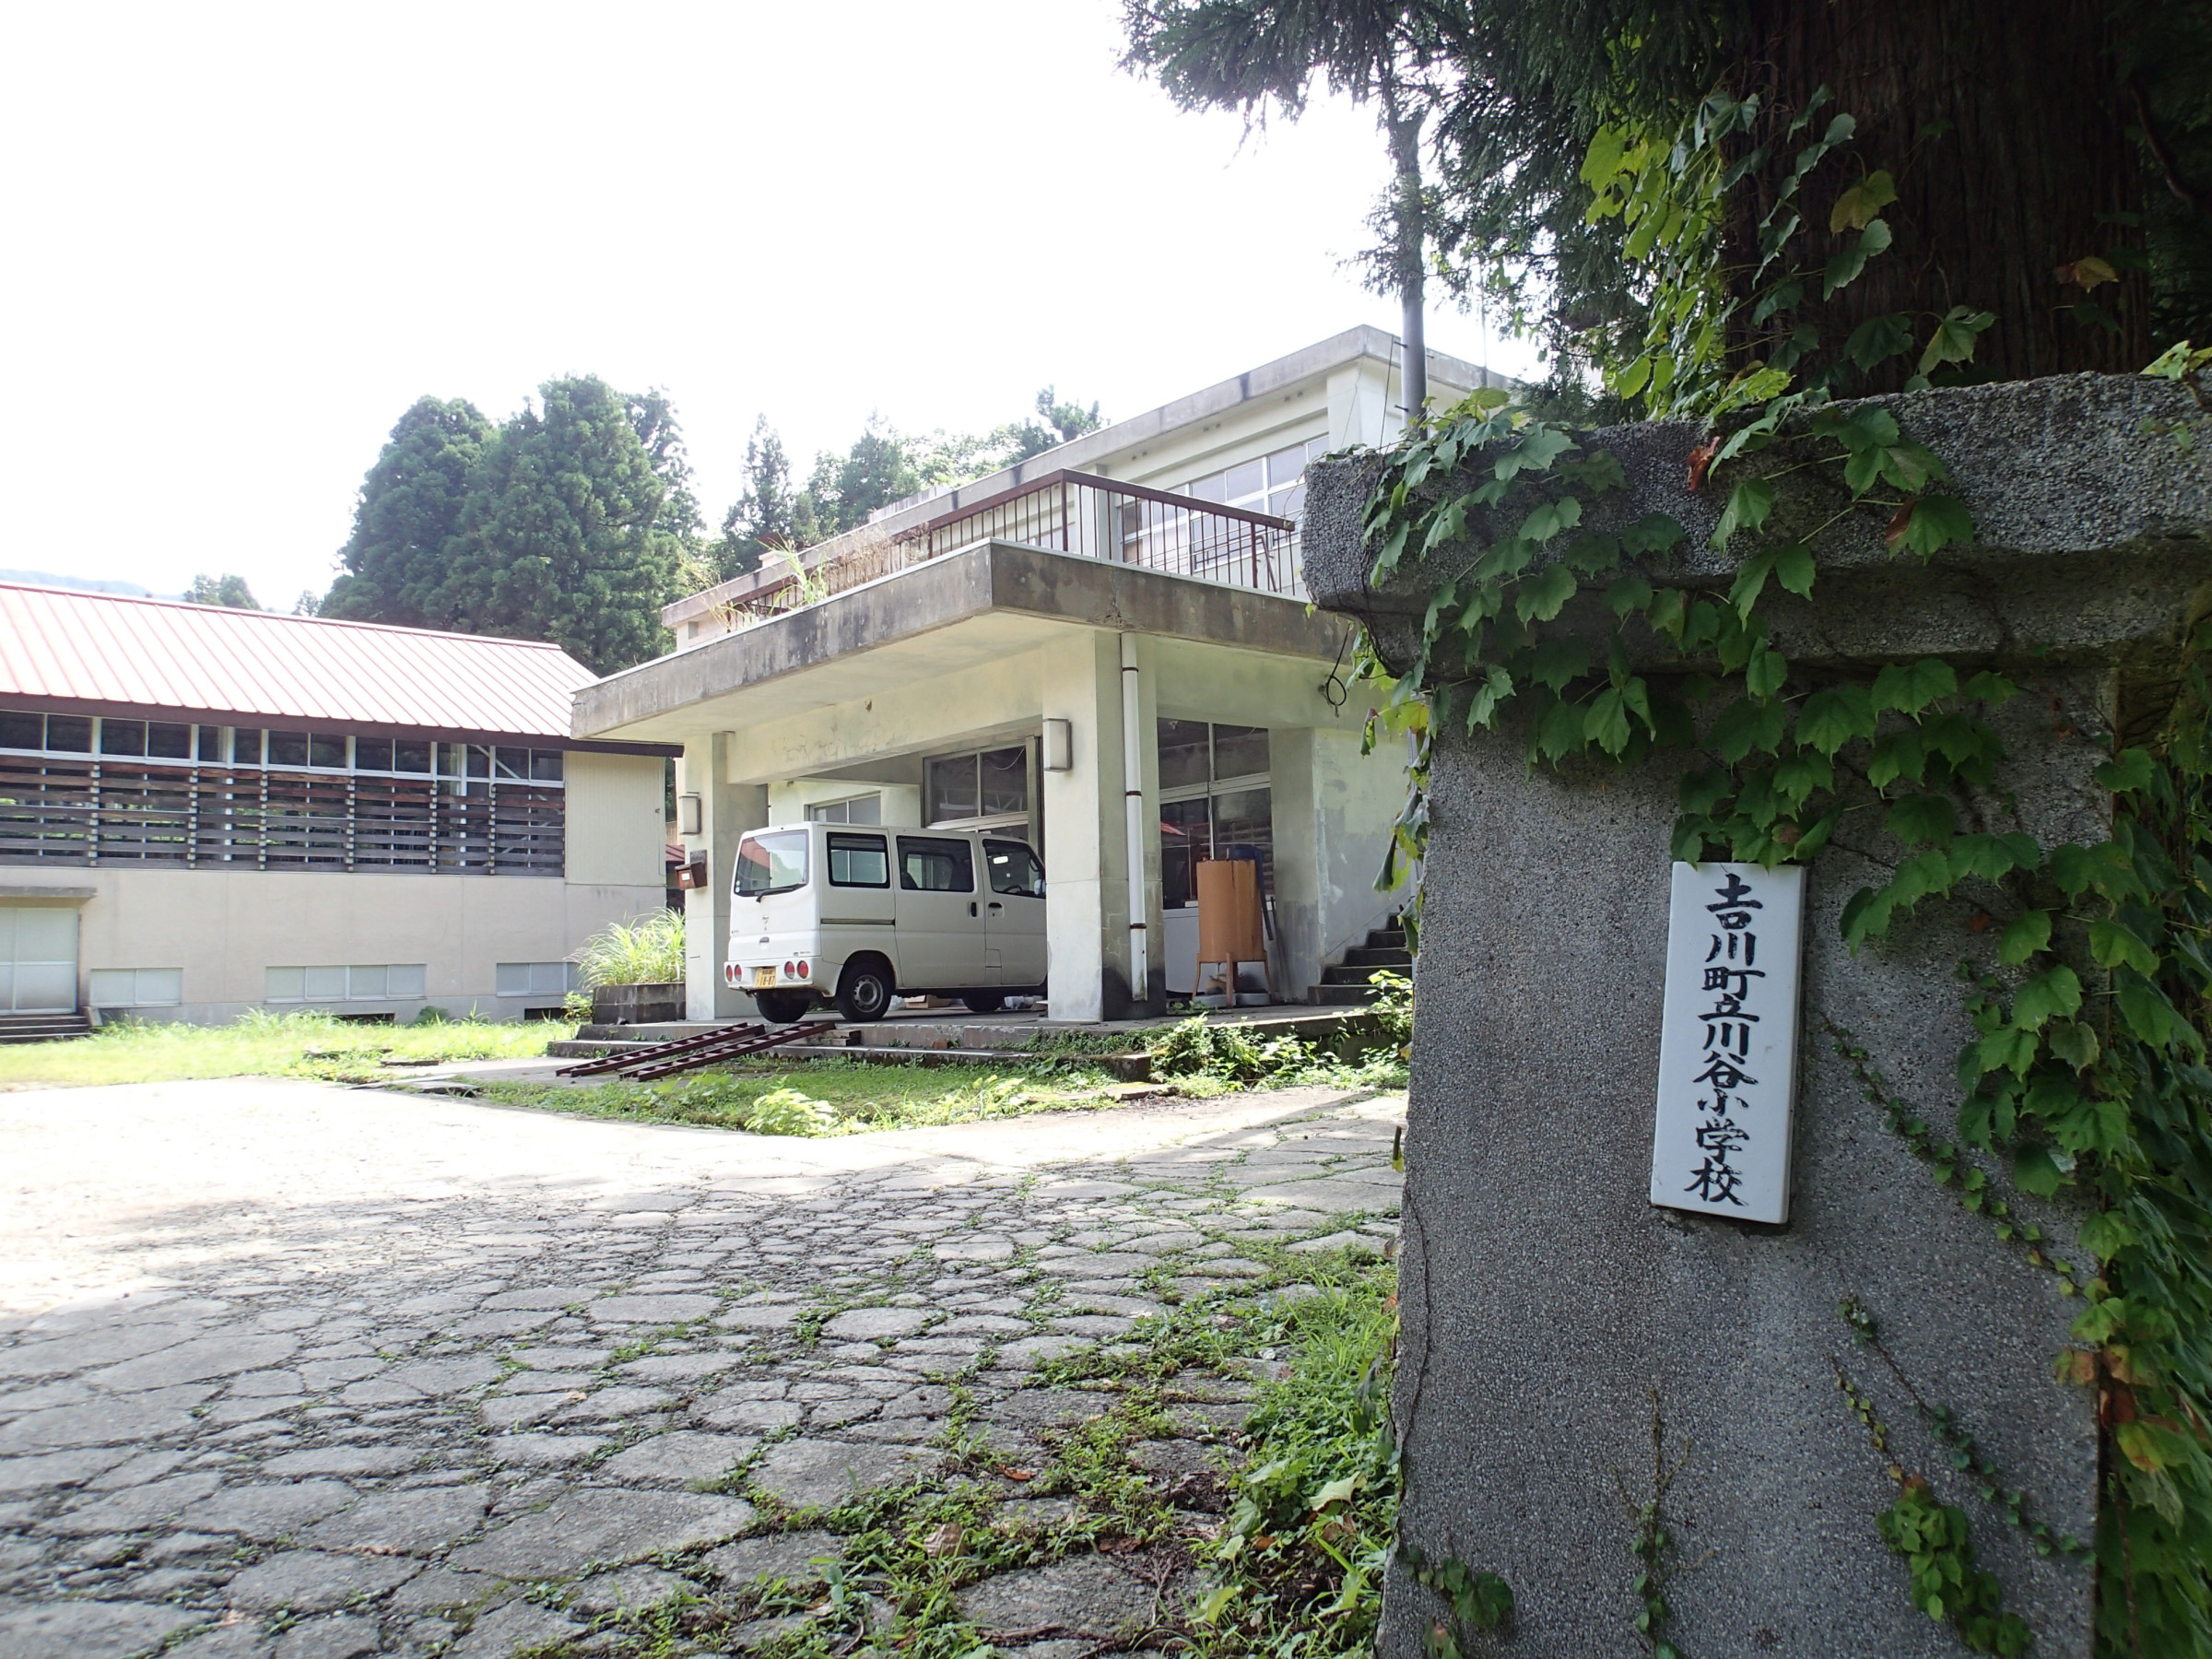 川谷生産組合は旧川谷小学校の校舎を活用した小さな加工所です。